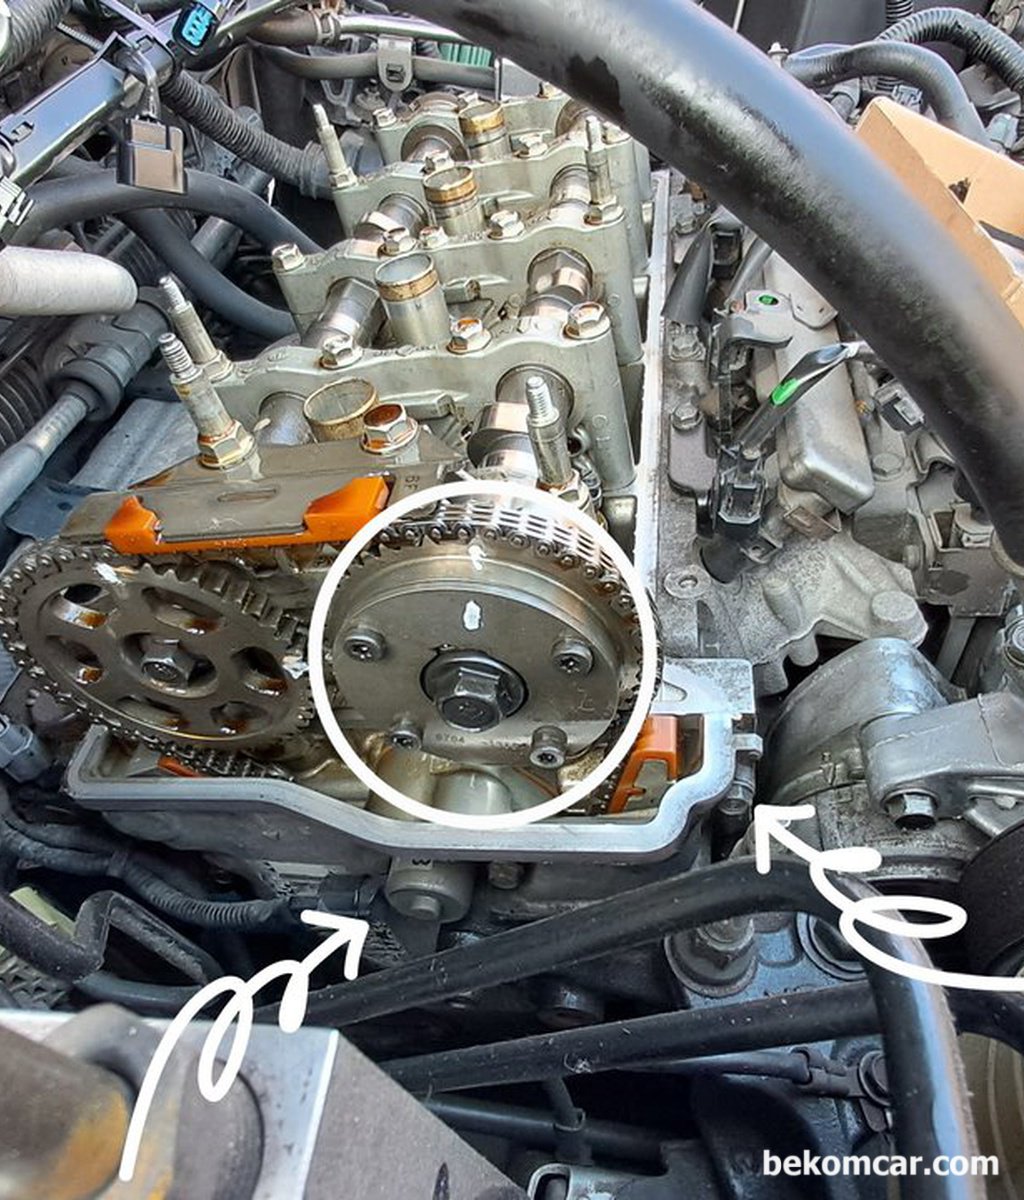 혼다 어코드 8세대 2.4L 차량의 VTEC 스풀밸브 오일누유가 있다고 하는데 어디를 점검해야 하나요?|베콤카 (bekomcar.com)